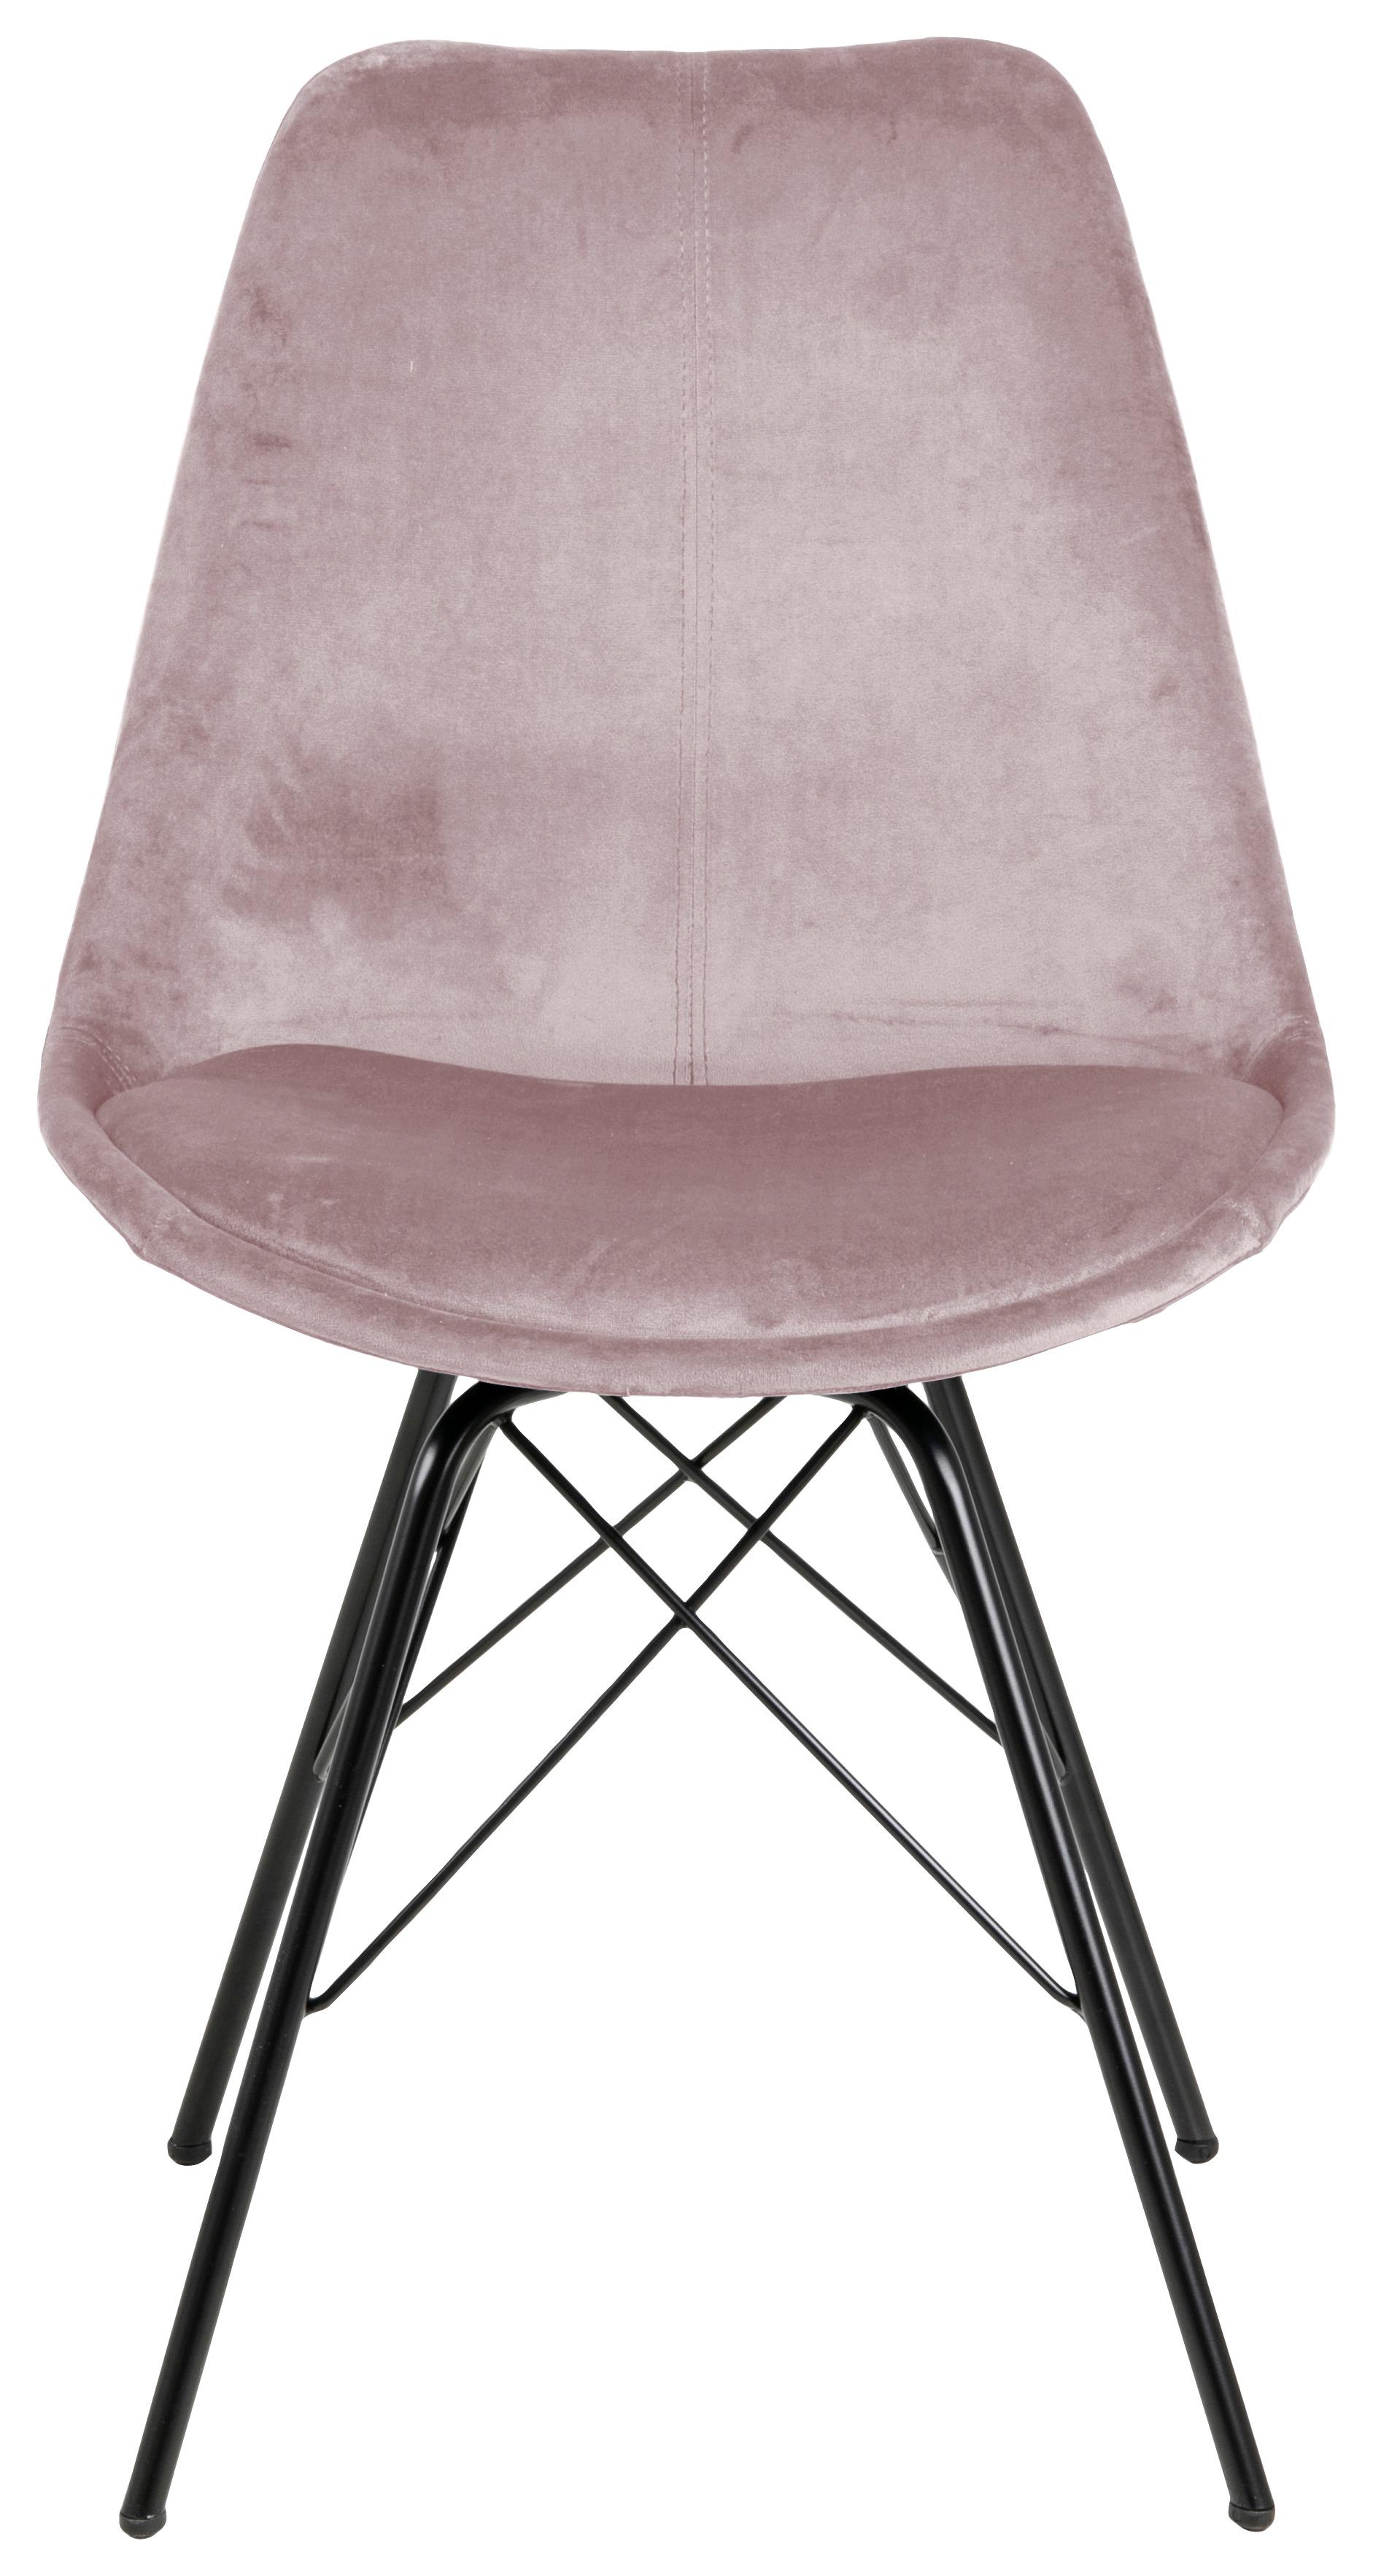 Jídelní Židle Eris Starorůžová - starorůžová/černá, Trend, kov/textil (48,5/85,5/54cm) - Carryhome